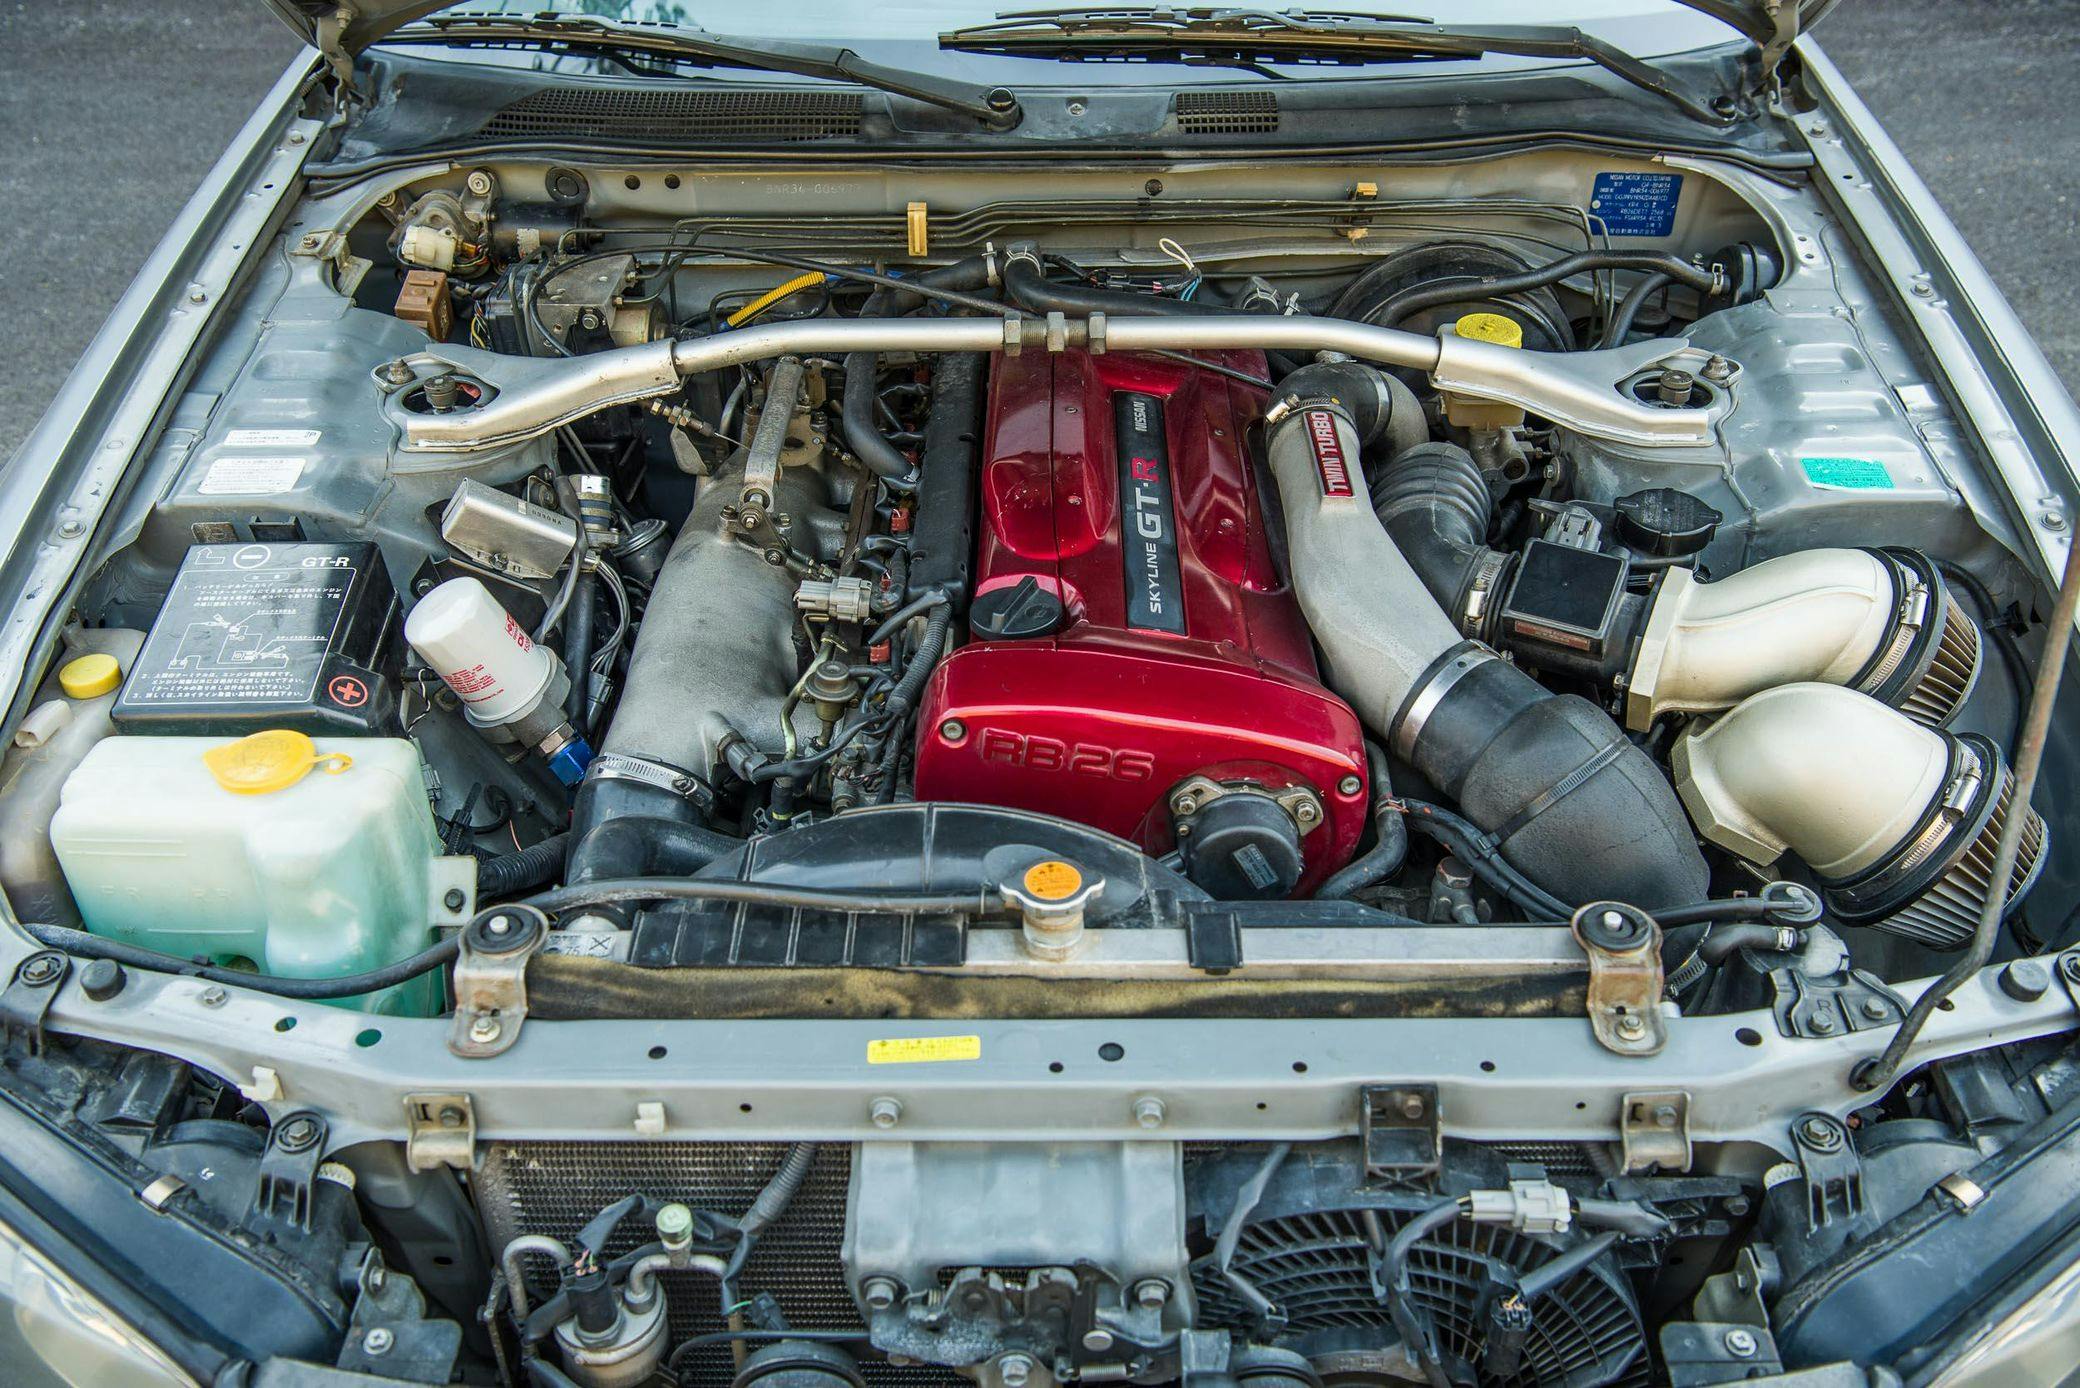 2000 Nissan R34 GT-R engine bay